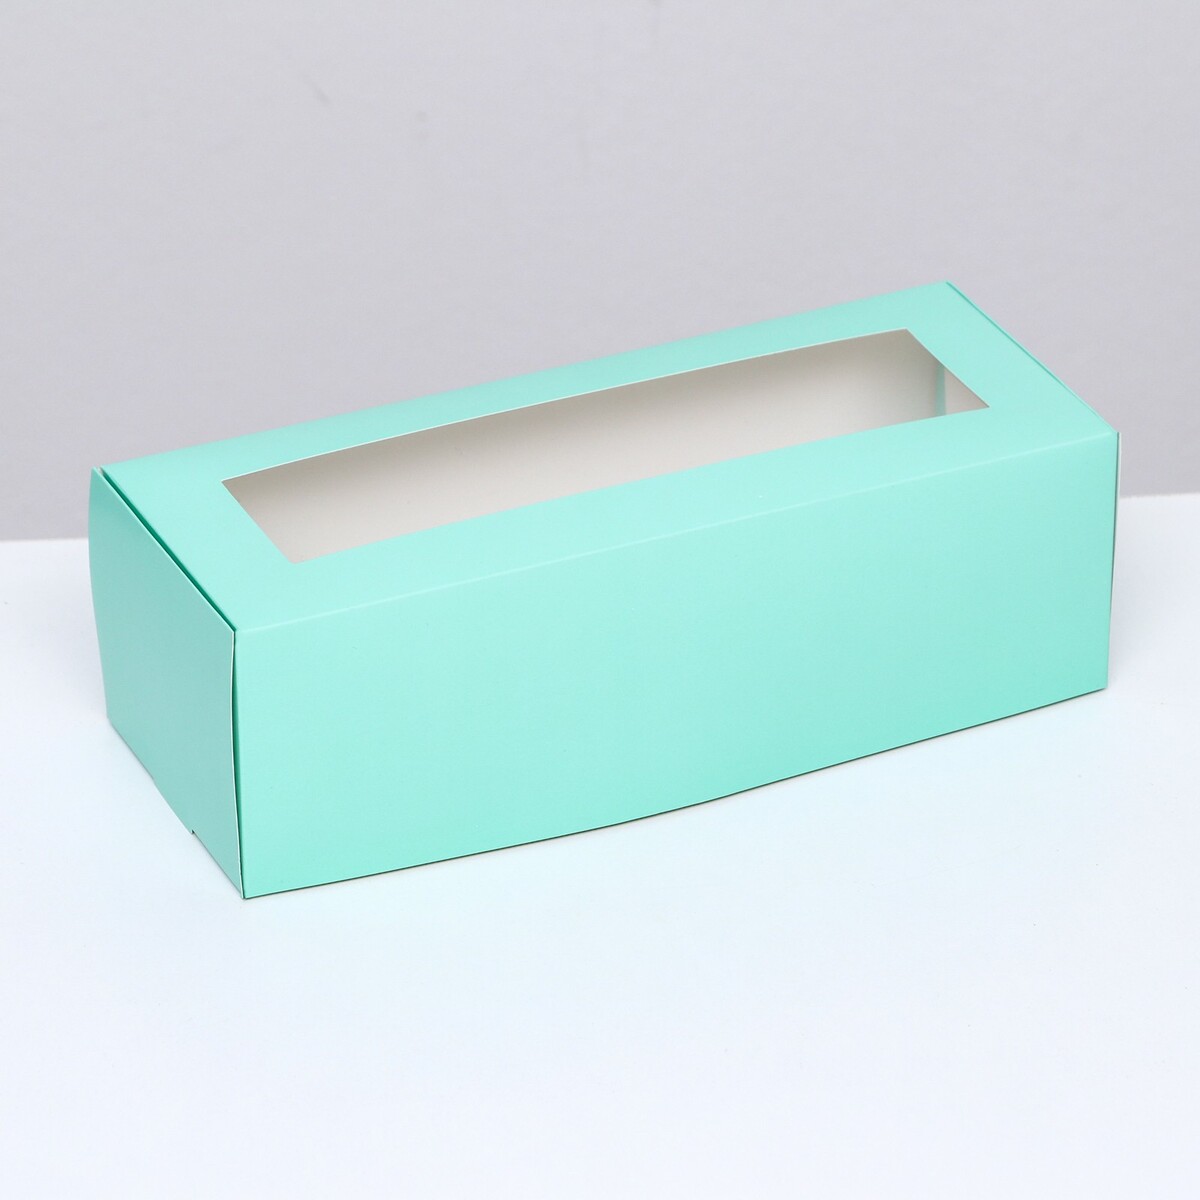 Коробка складная с окном под рулет, зеленая, 26 х 10 х 8 см коробка под рулет белая 18 5 х 6 5 х 6 5 см